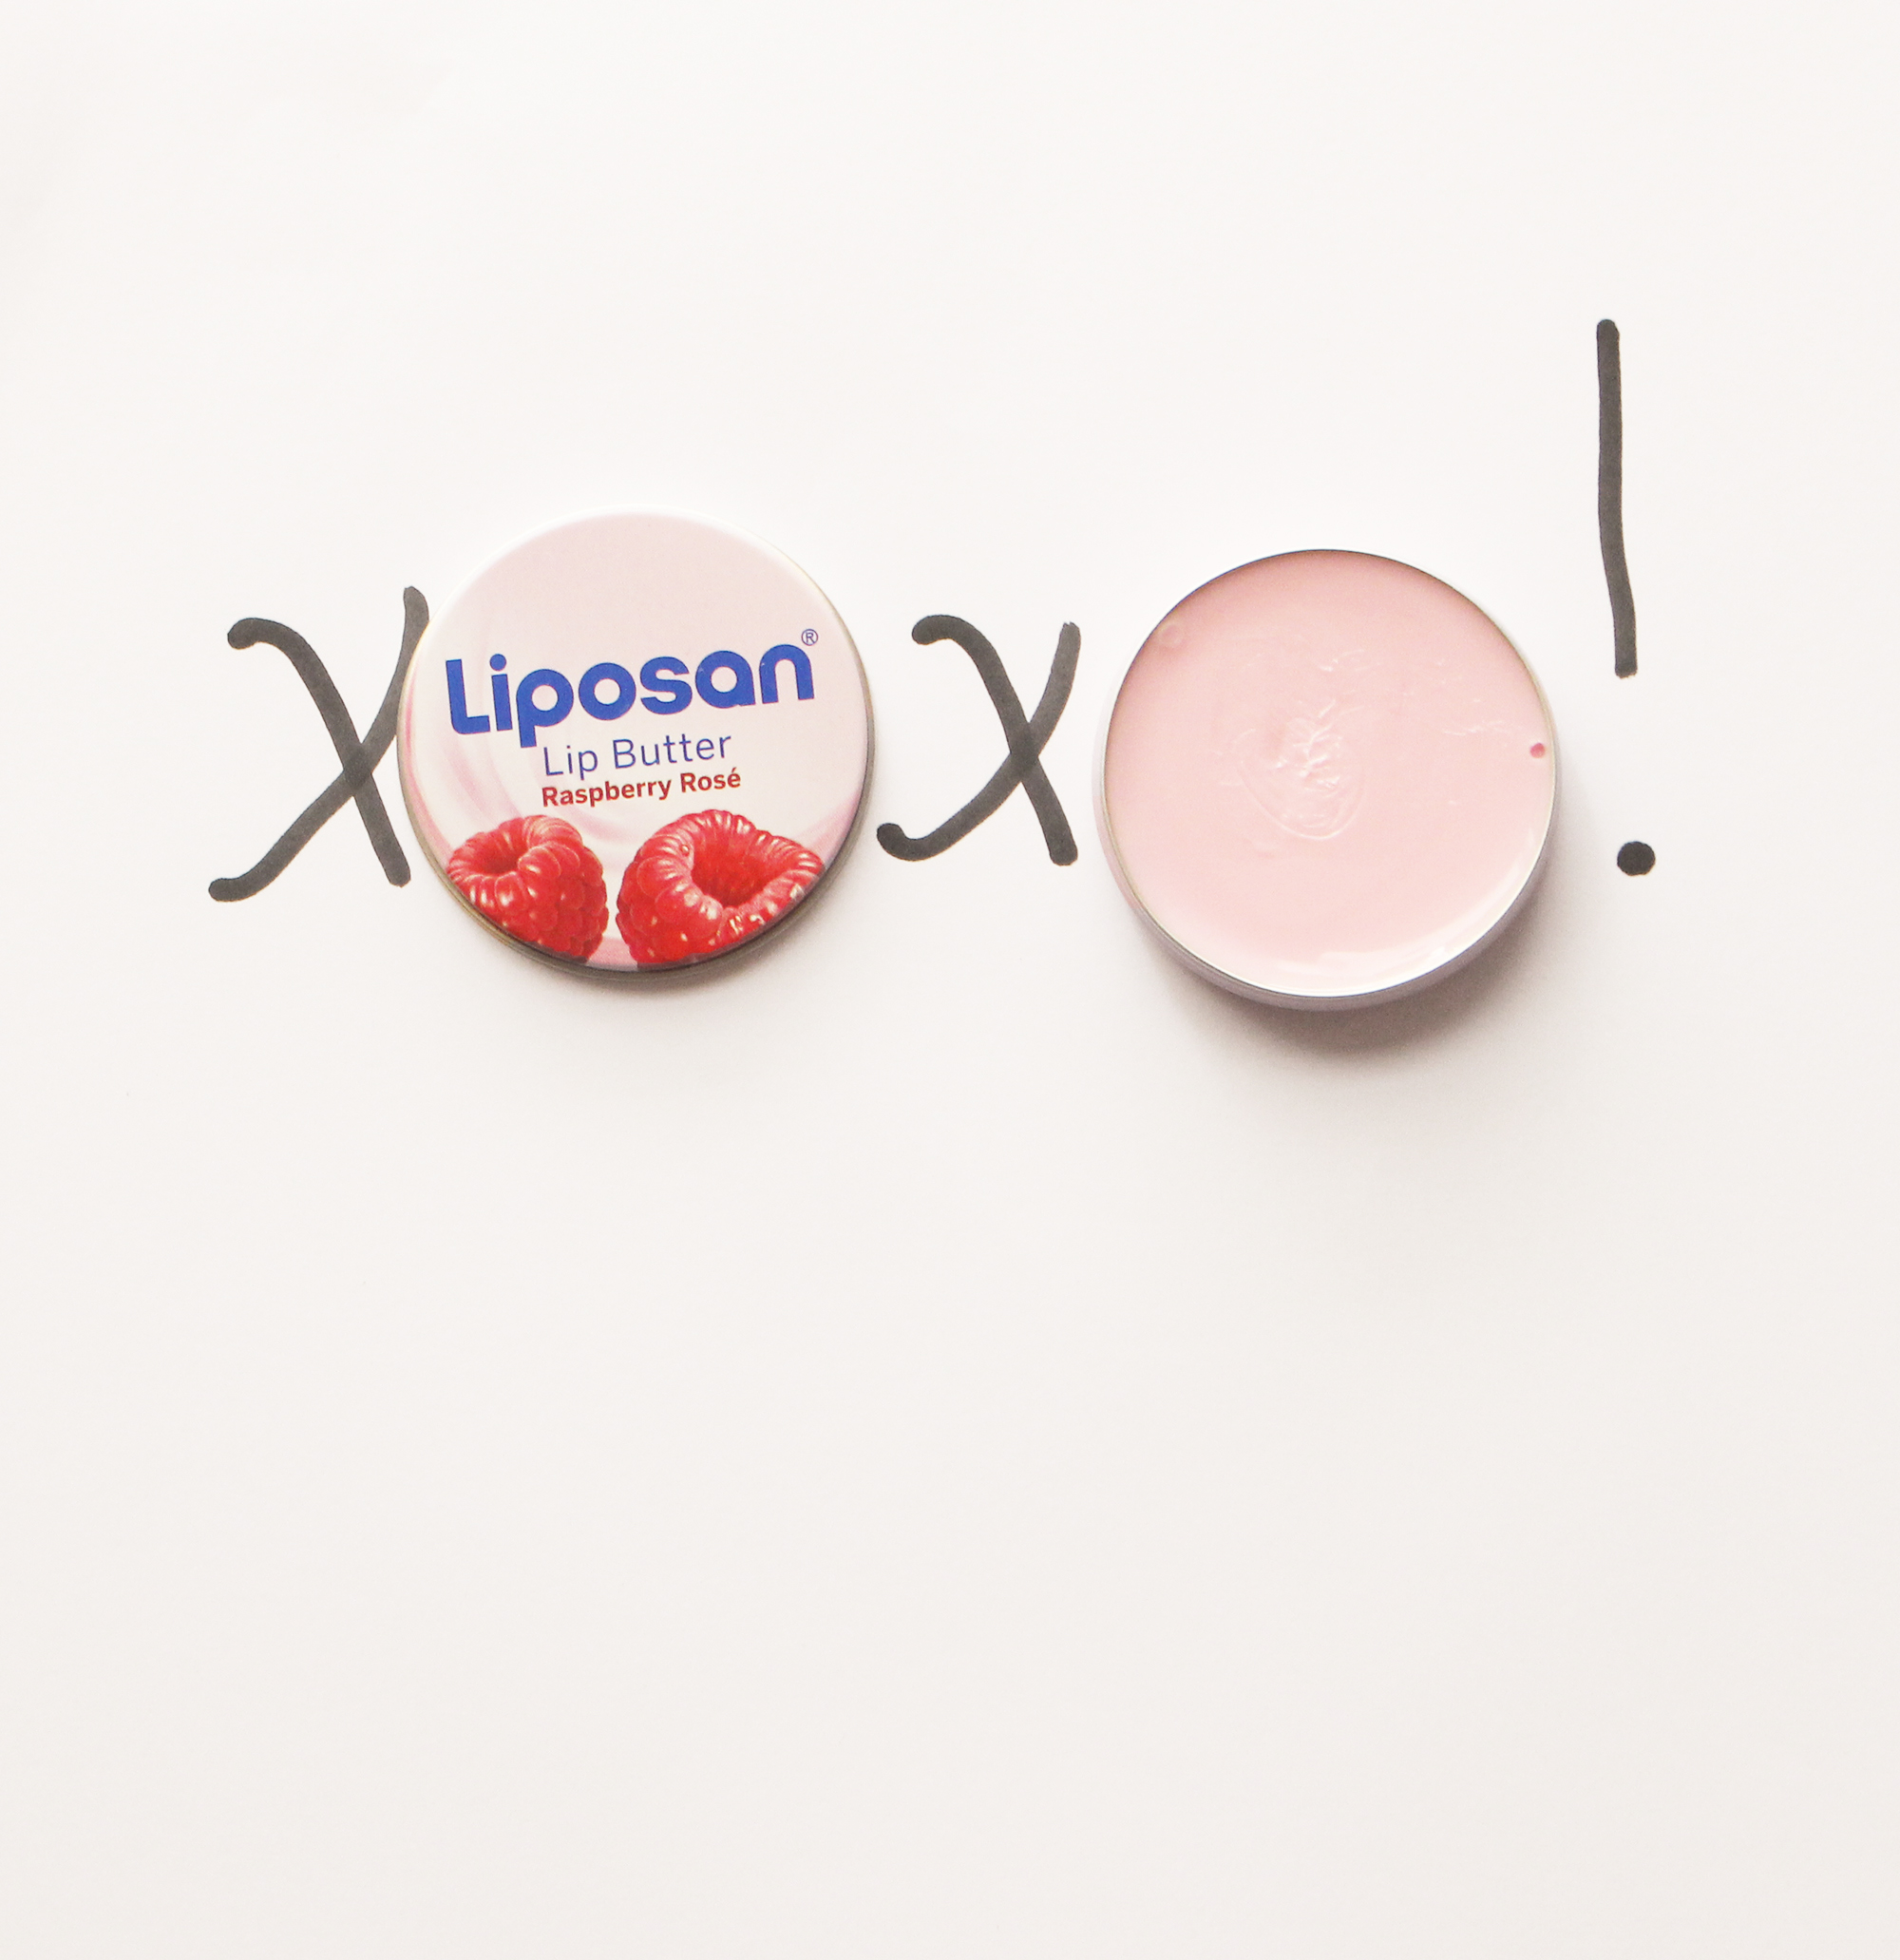 LIPOSAN / LABELLO FRUITY COLOUR SHINE LIP CARE IN: Cherry, Strawberry